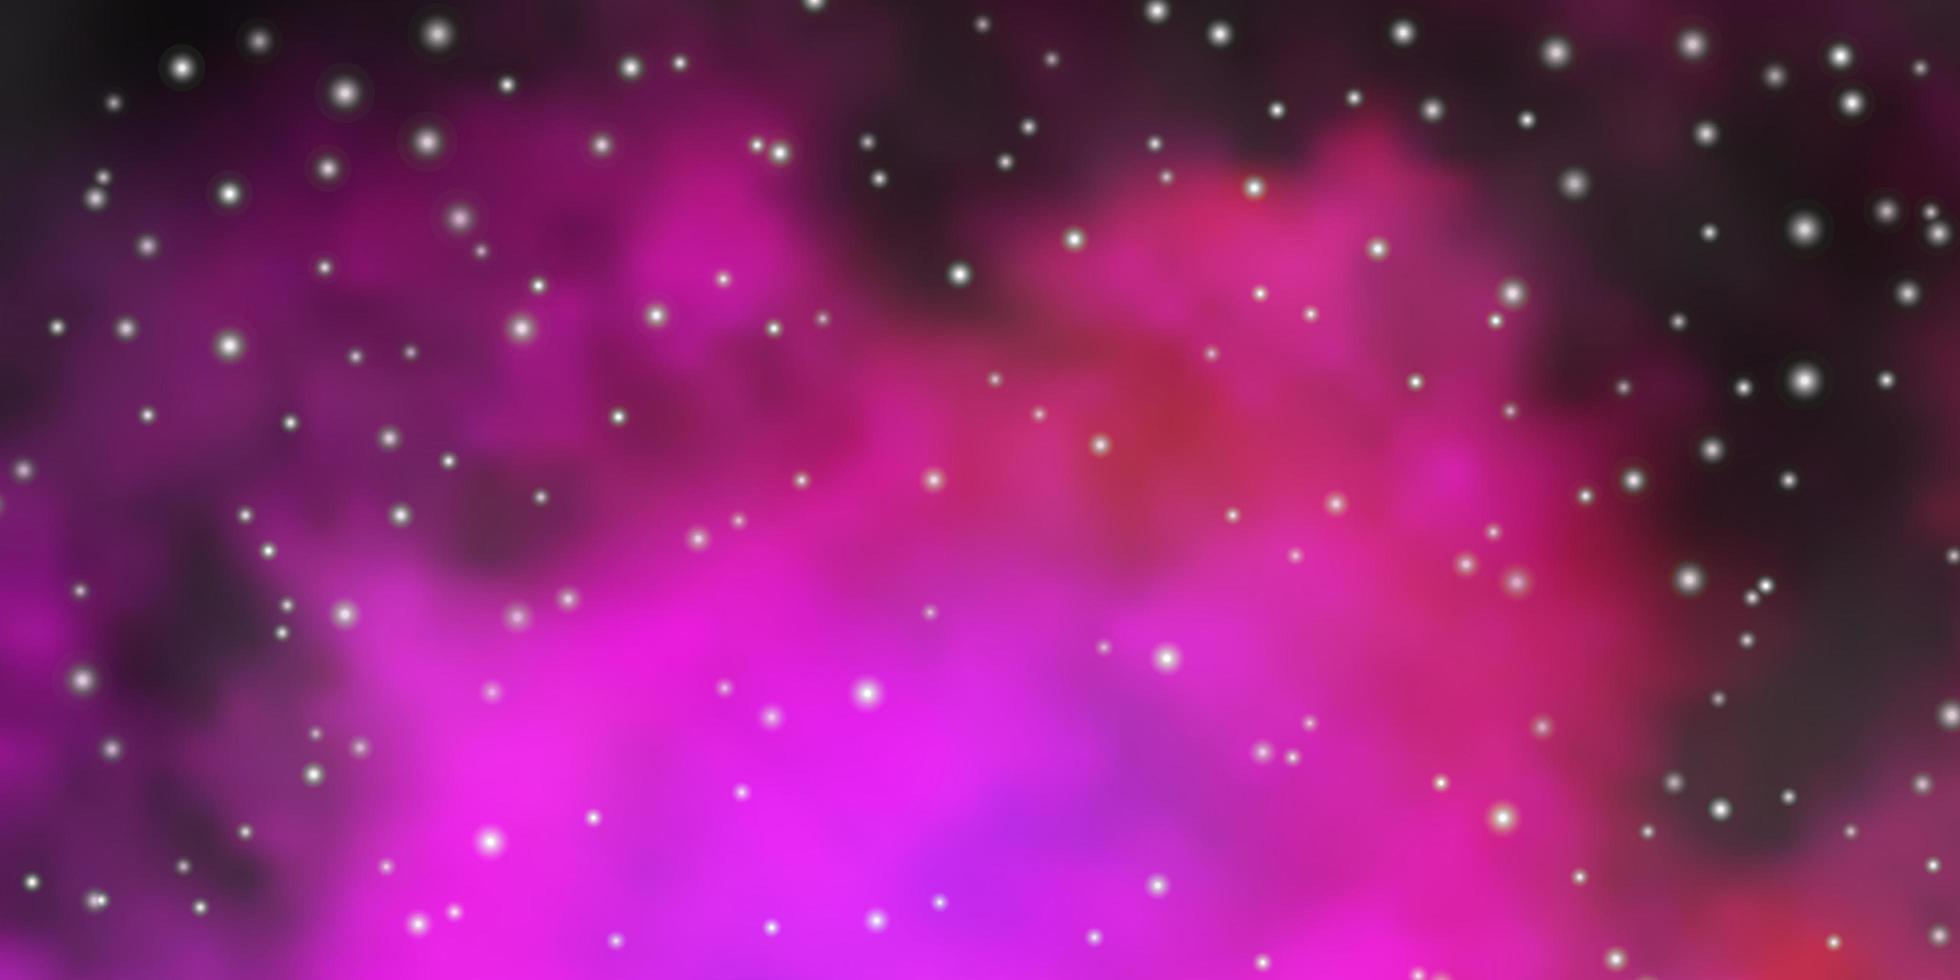 layout de vetor rosa escuro com estrelas brilhantes. ilustração abstrata geométrica moderna com estrelas. padrão para anúncio de ano novo, livretos.